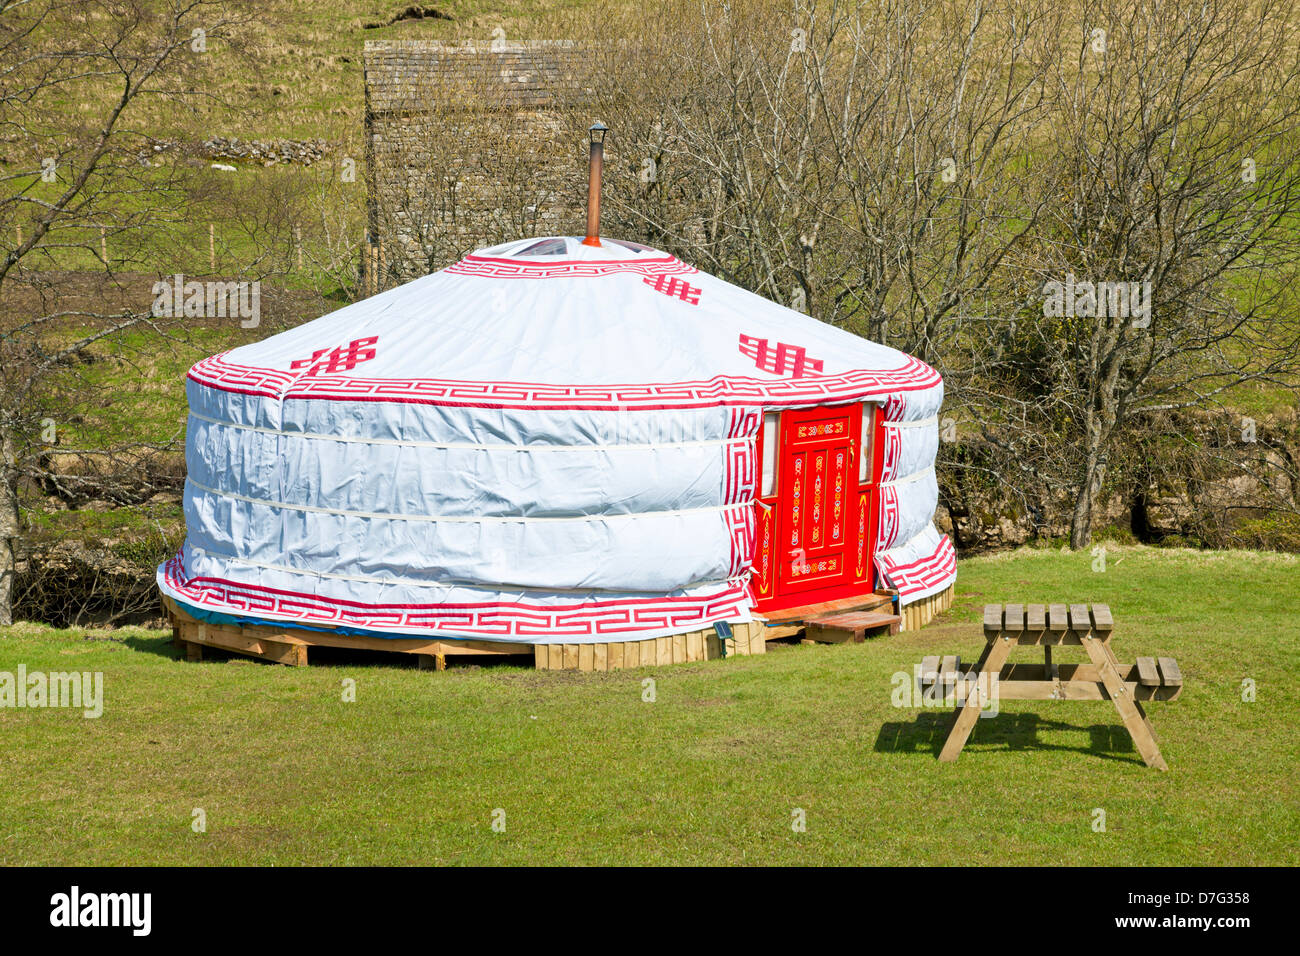 Yurt tenda per campeggio nel villaggio di Keld come Keld Bunk Barn e Yurts Yorkshire Dales National Park North Yorkshire Inghilterra Regno Unito GB Europa Foto Stock